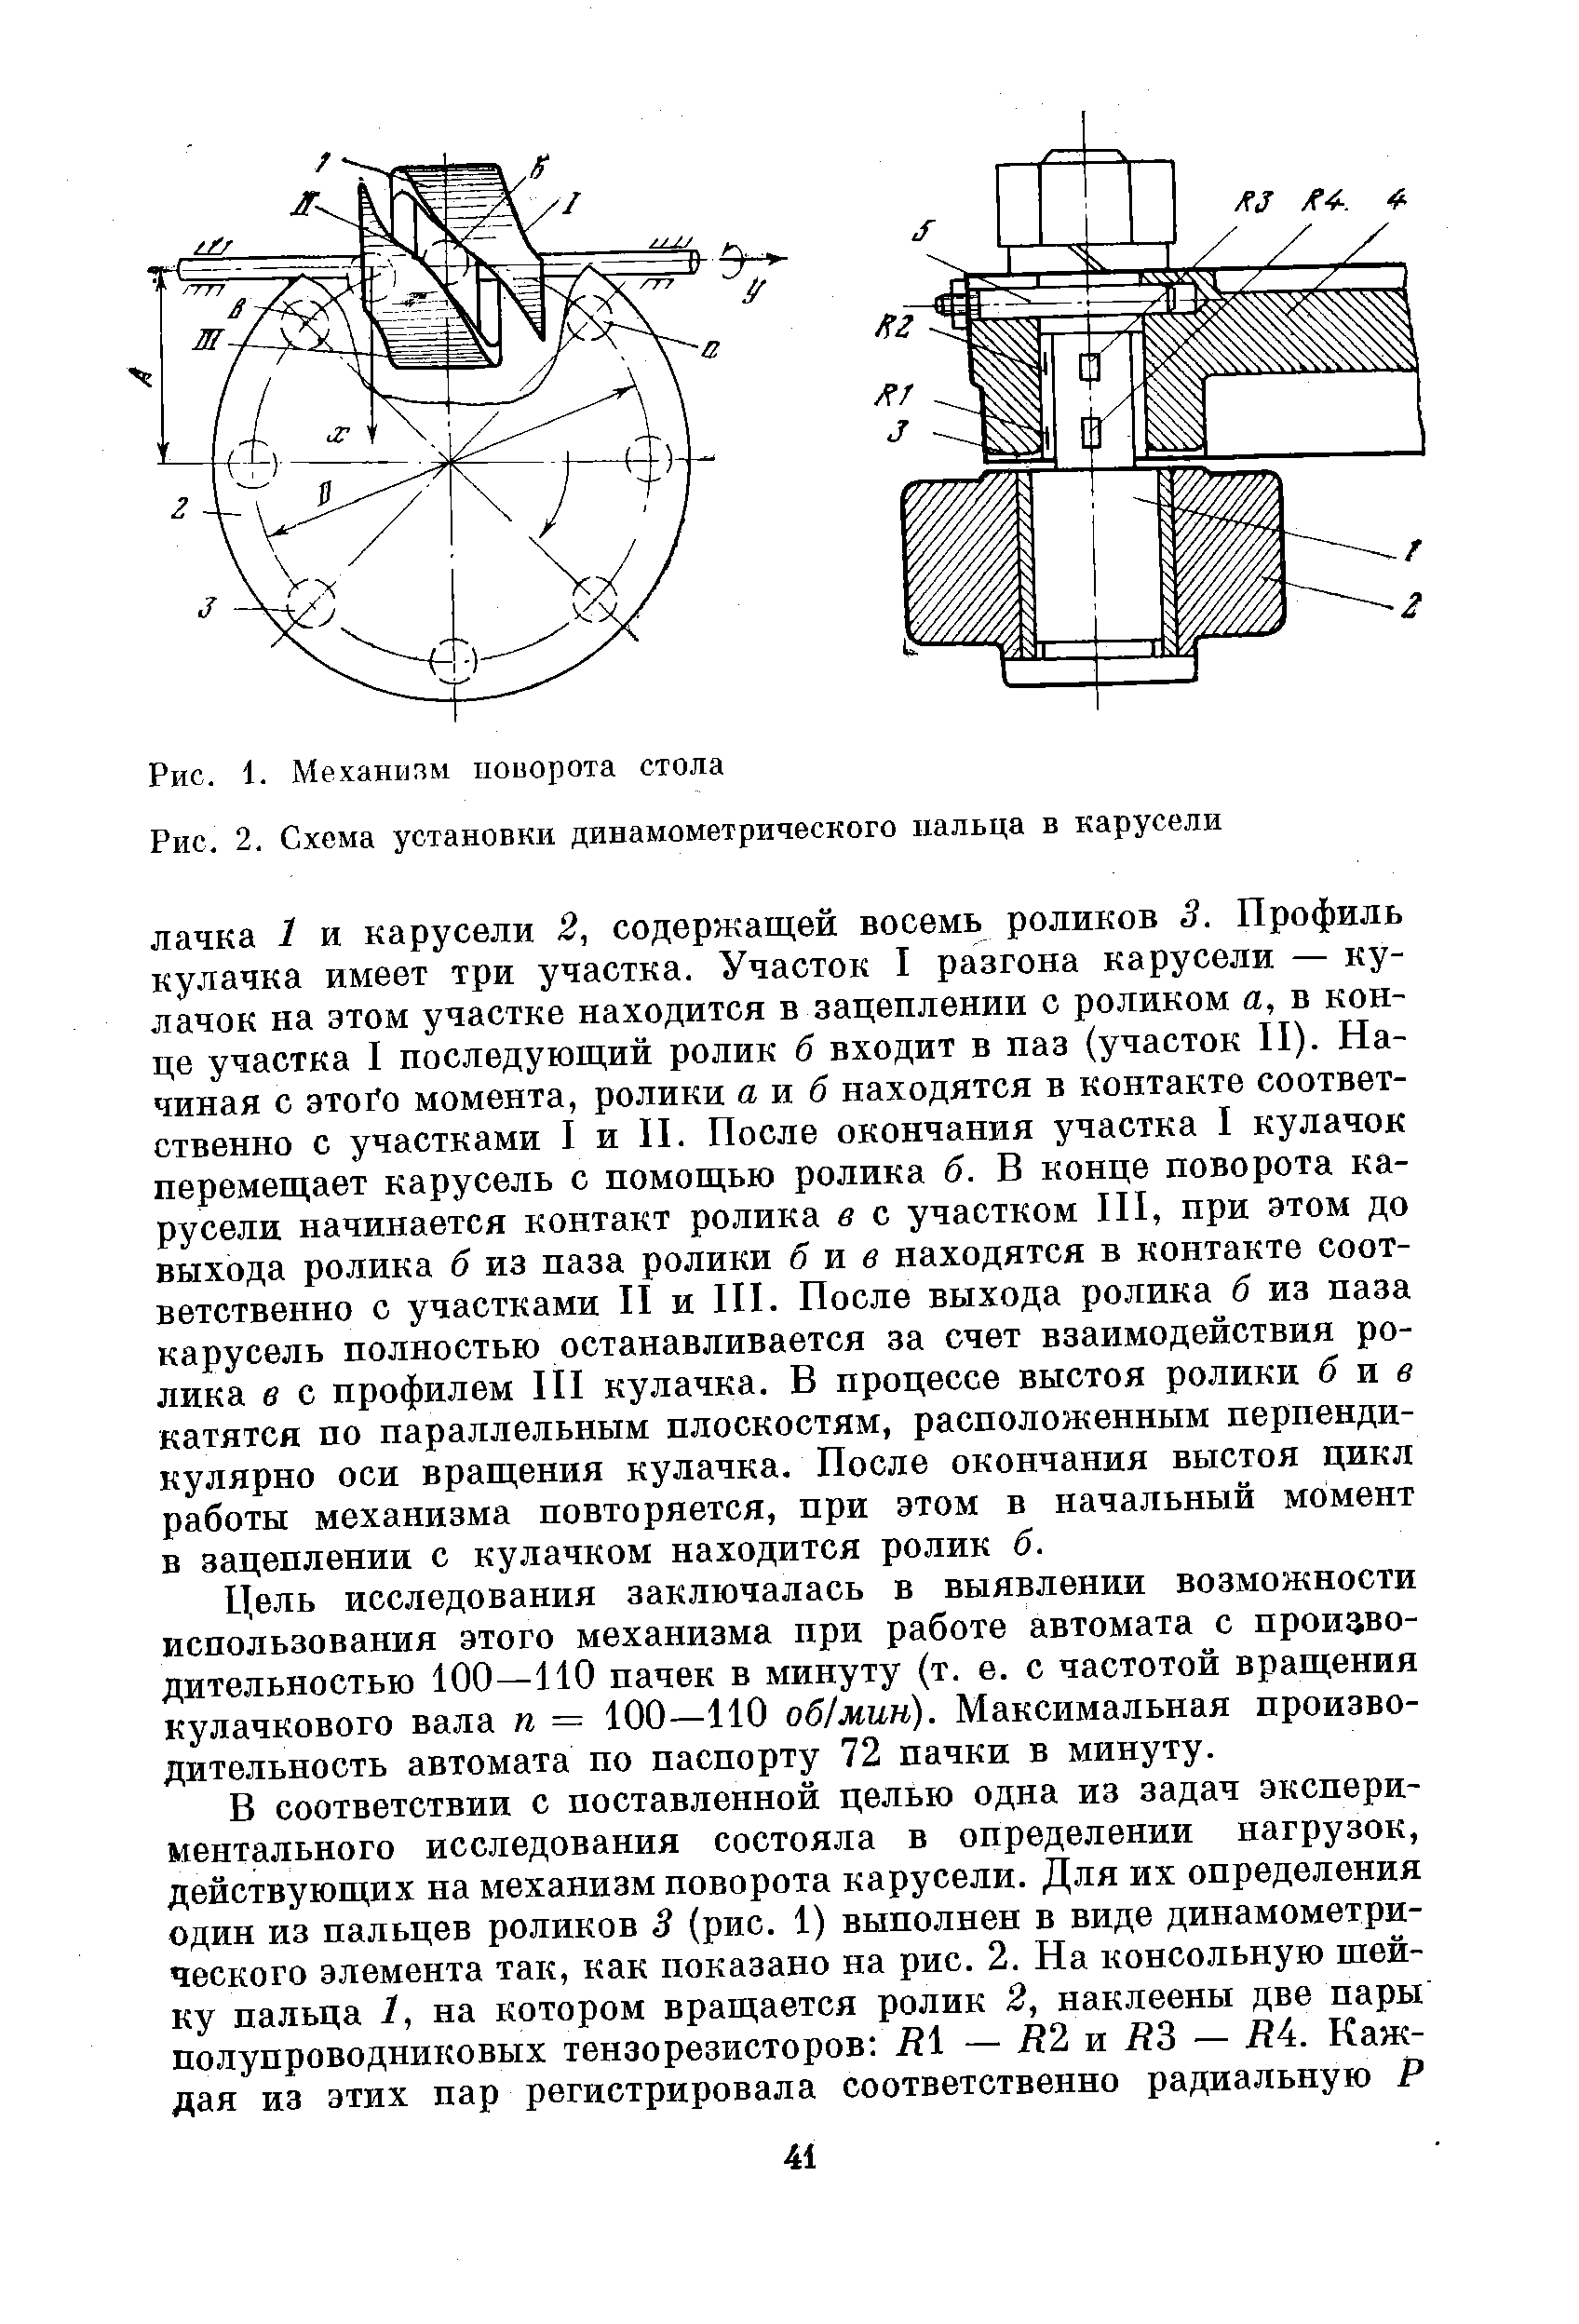 Рис. 2. Схема установки динамометрического пальца в карусели
